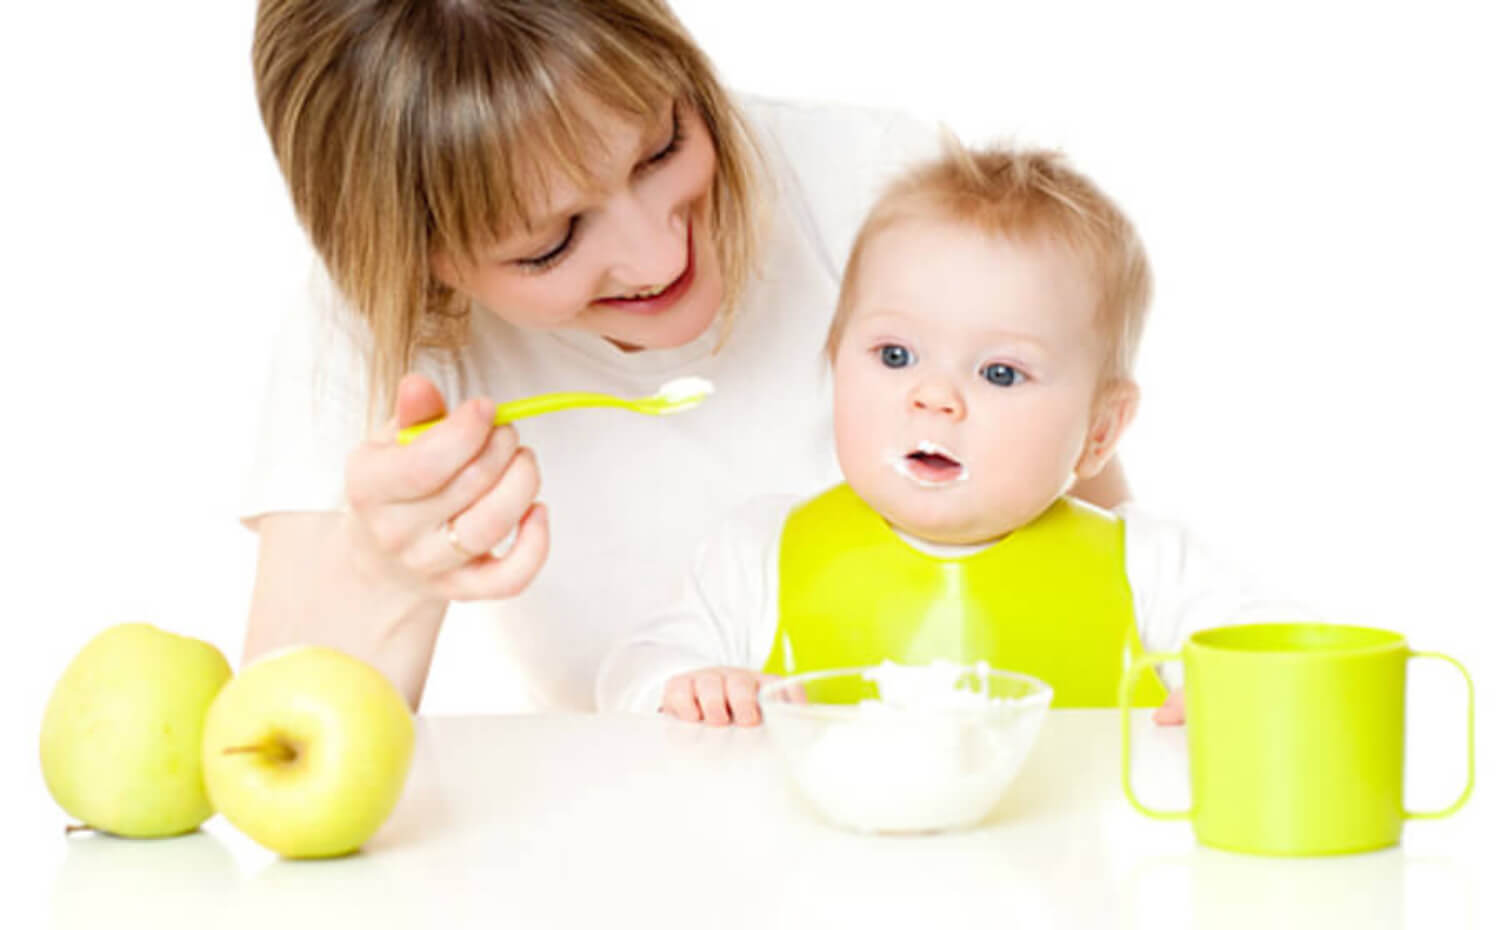 Bébé prenant de la bouillie à base d'aliments typiques d'un régime végétalien.